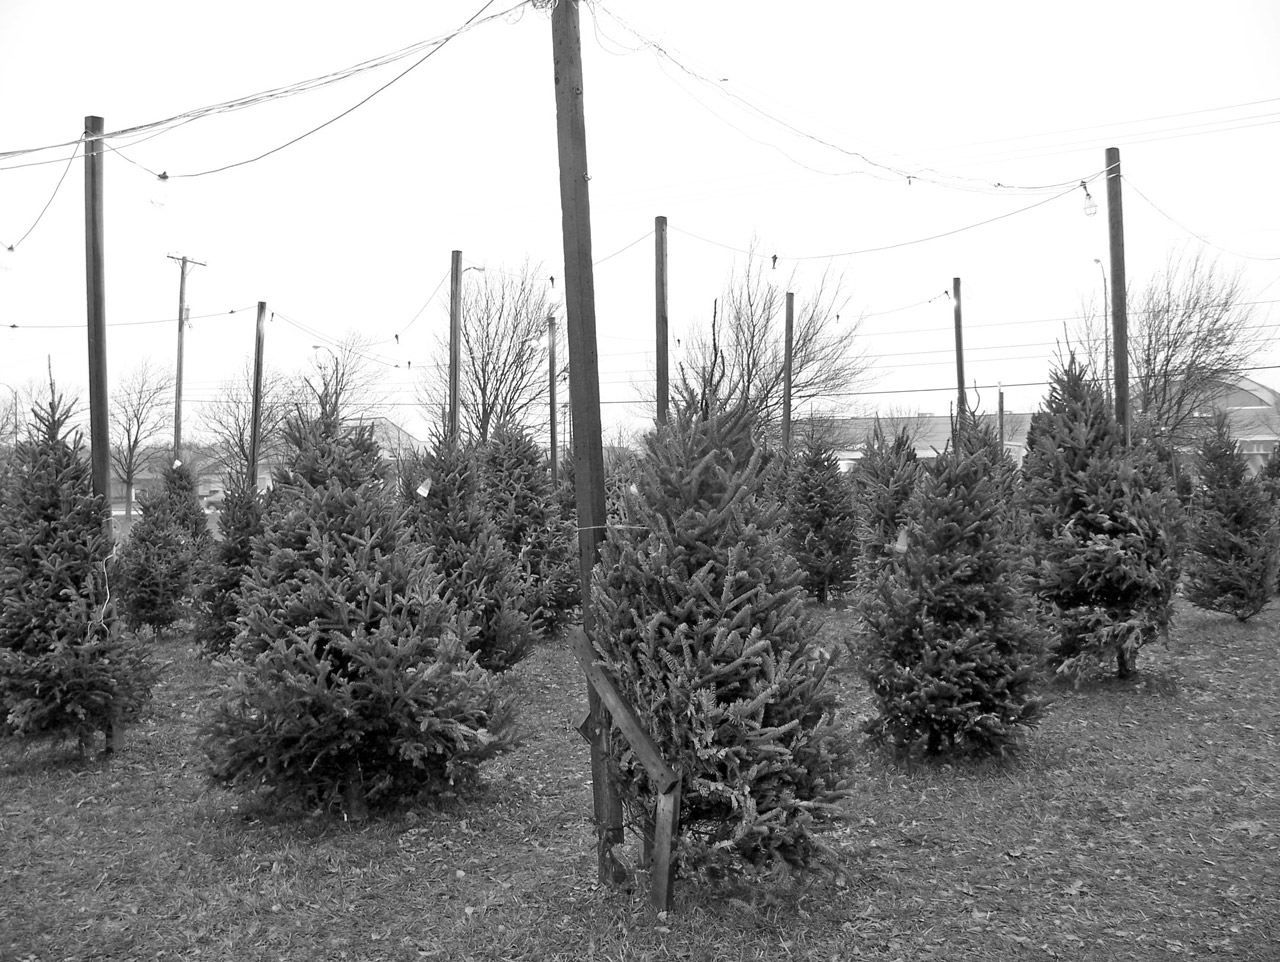 Christmas Tree Lot